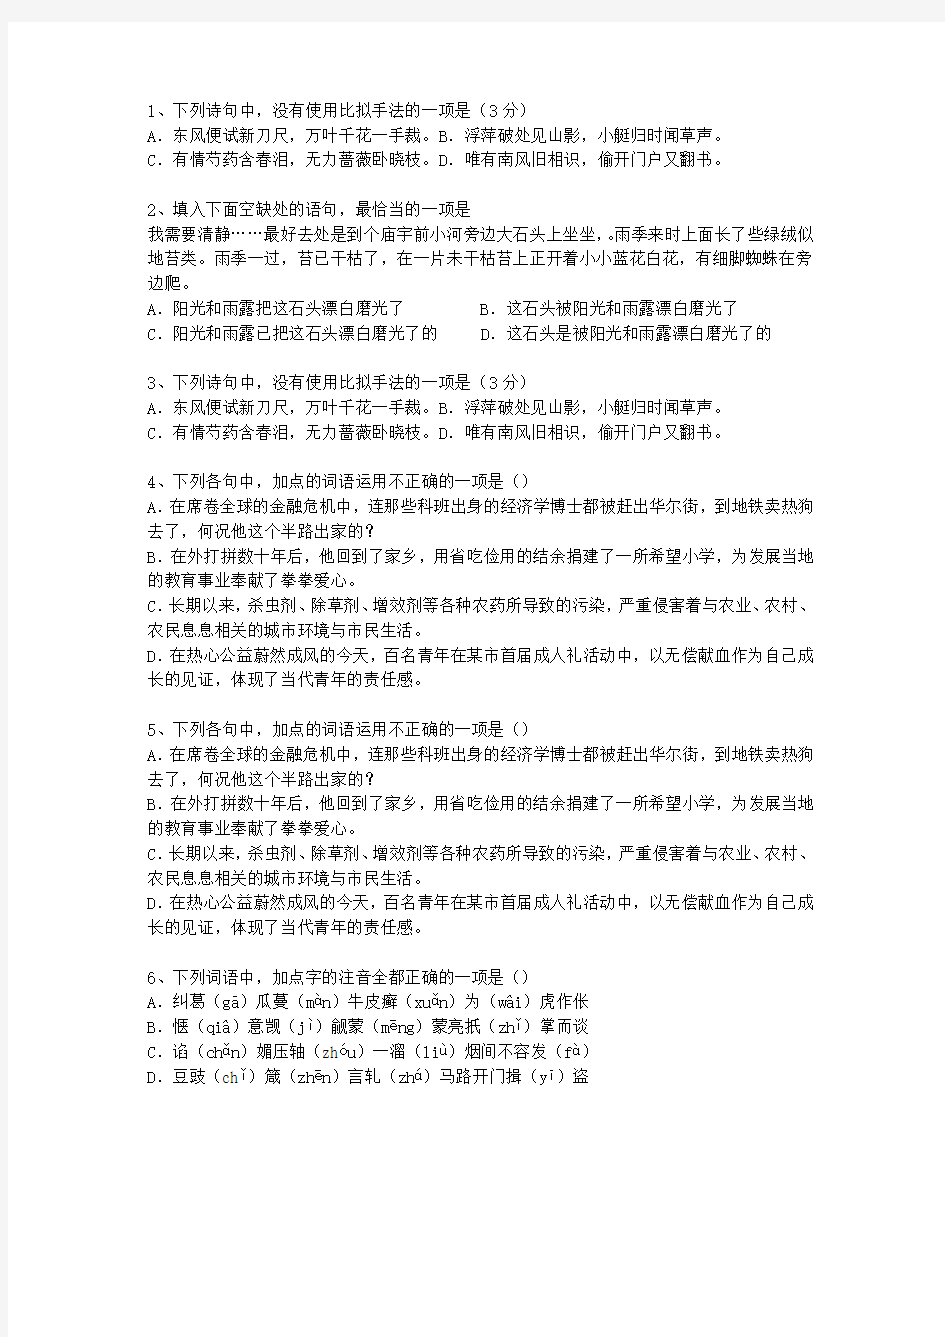 2014云南省高考语文试卷答案、考点详解以及2016预测理论考试试题及答案